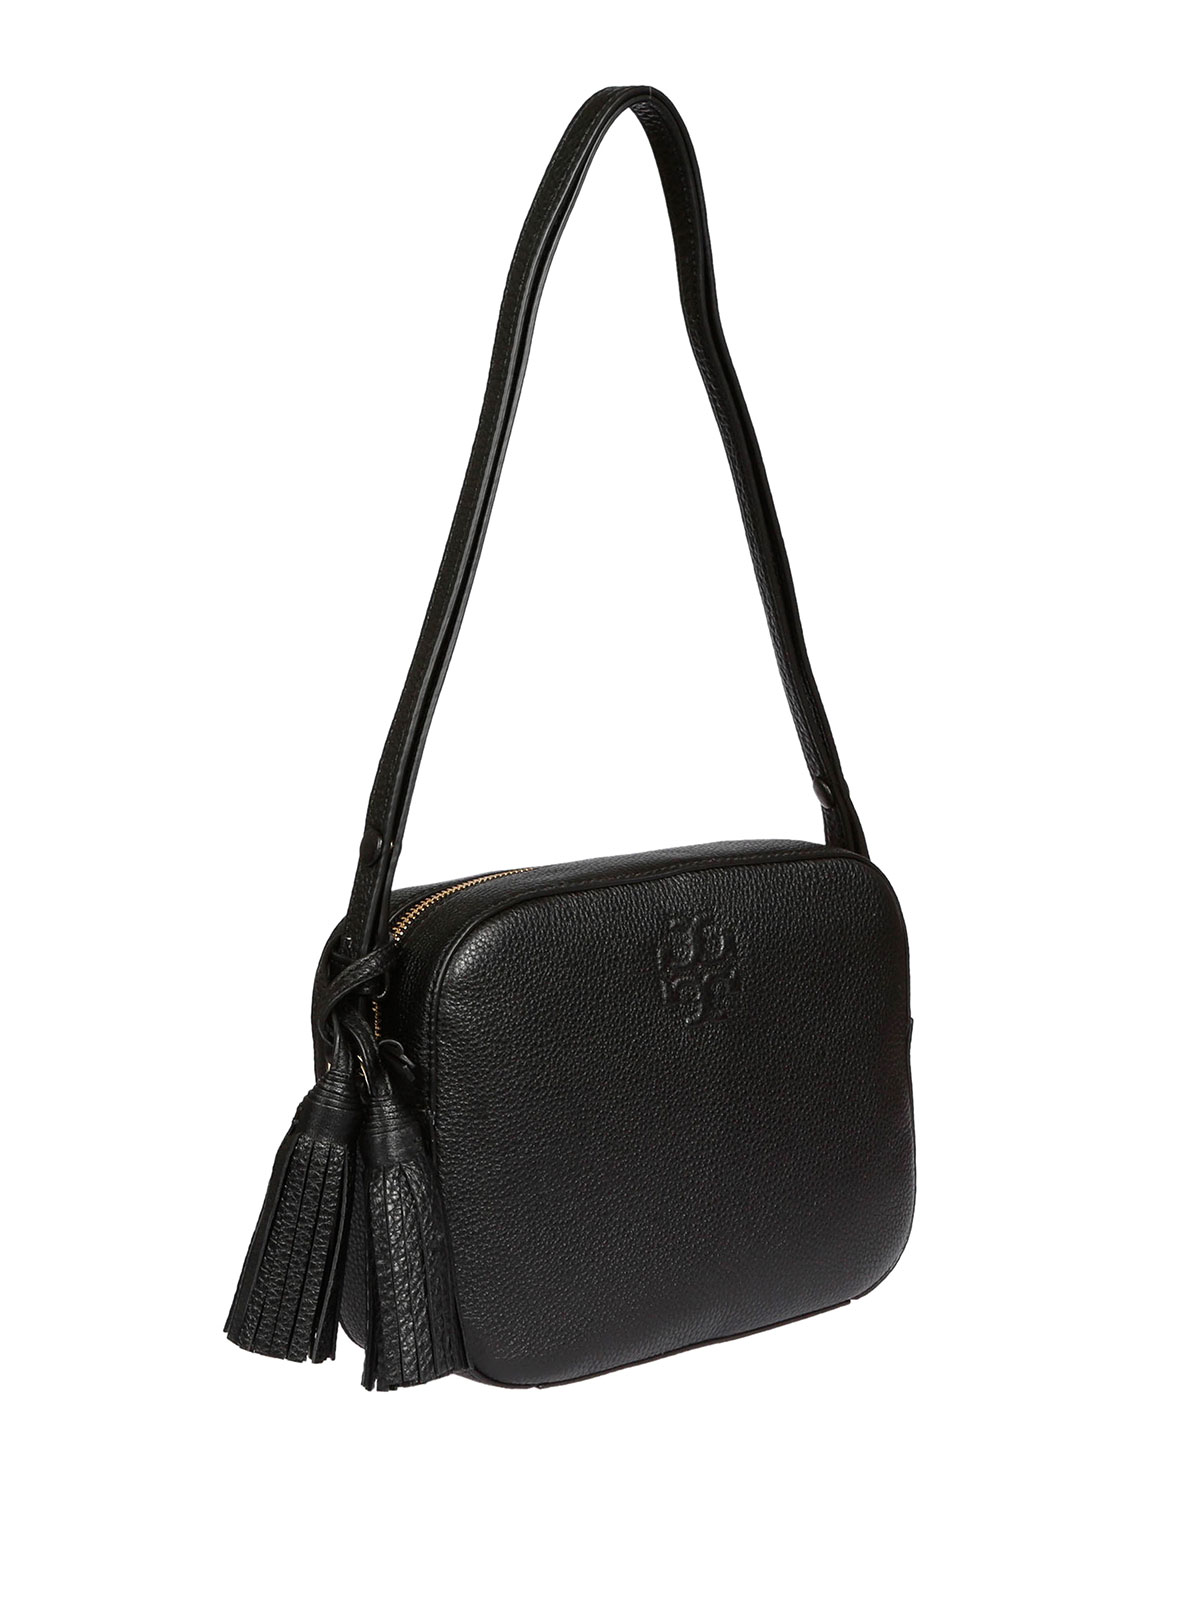 Tory Burch Thea Mini Bag, Women's Fashion, Bags & Wallets, Cross